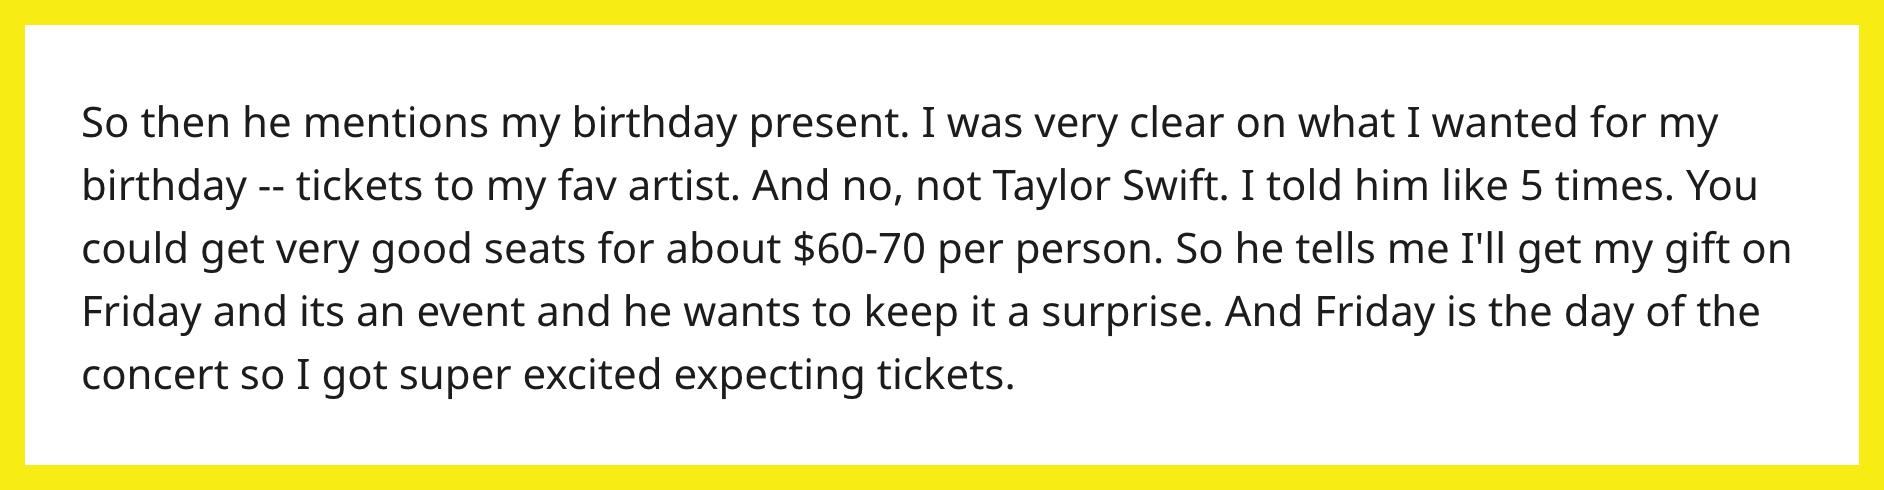 ある女性は夫に誕生日にコンサートのチケットを買ってもらいたいと考えていましたが、夫には別の計画がありました。